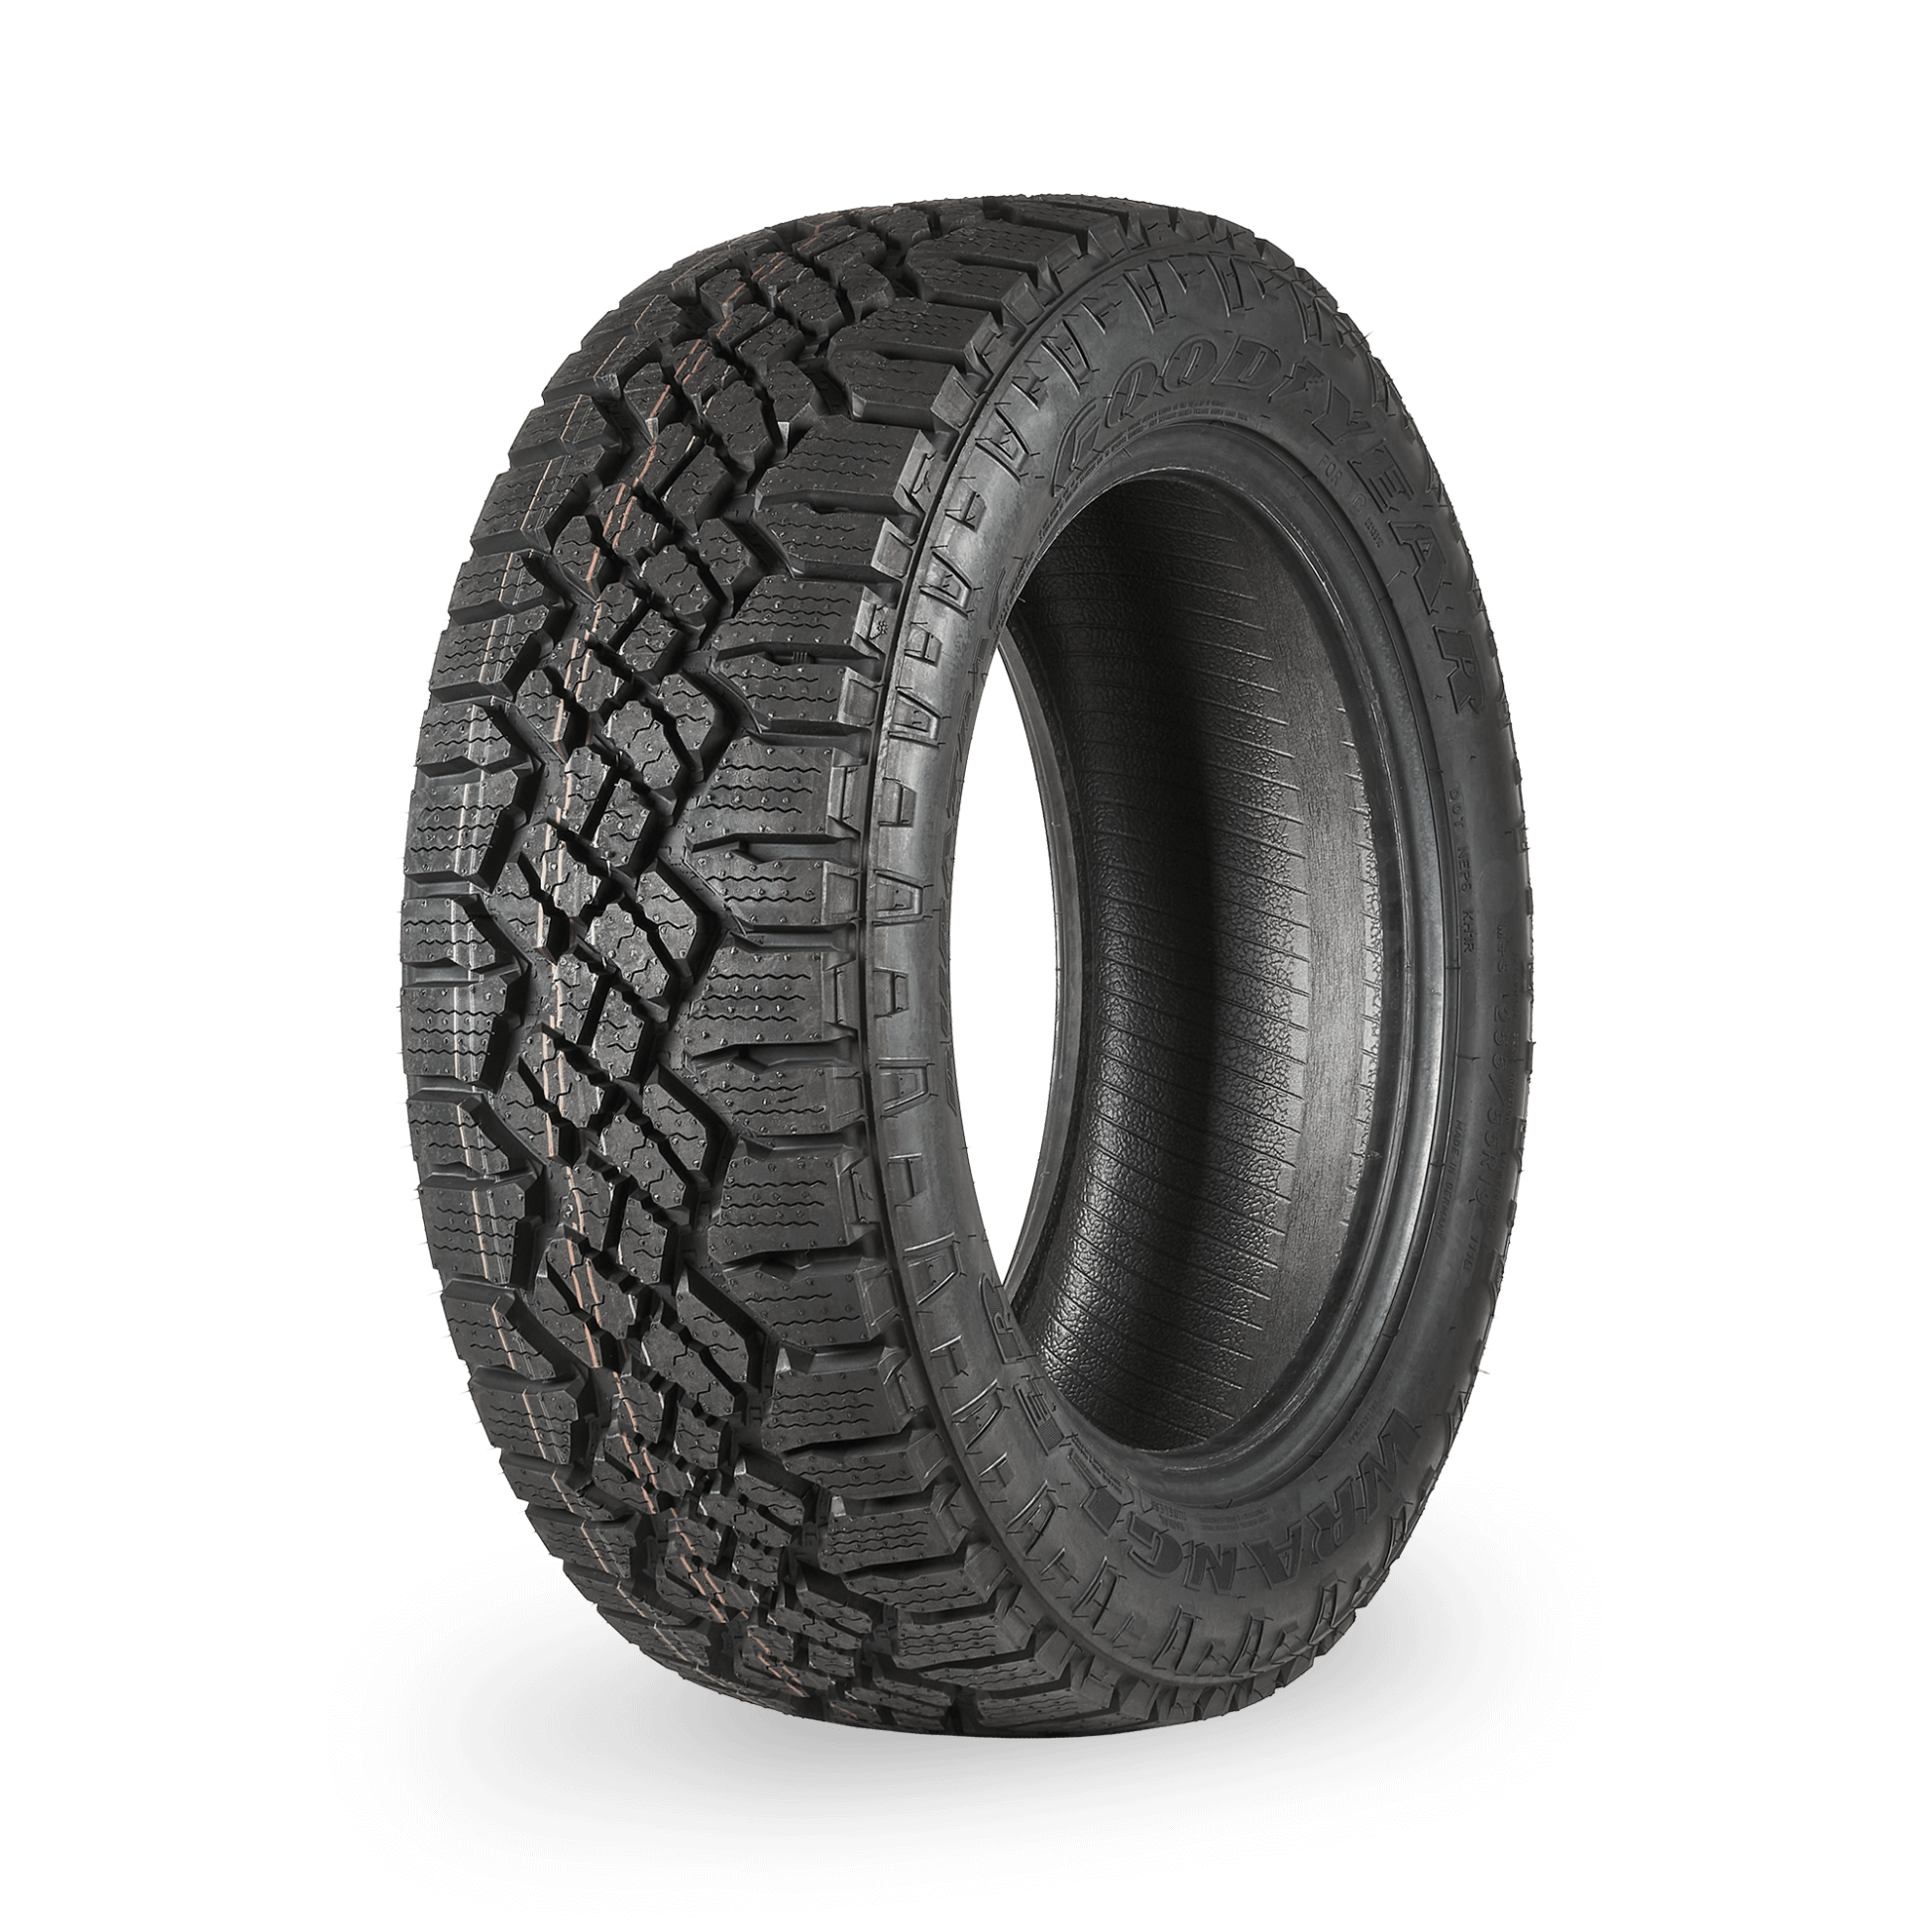 255/60/20 Goodyear Wrangler Duratrac All Terrain 113H Tyre - 4x4 Tyres